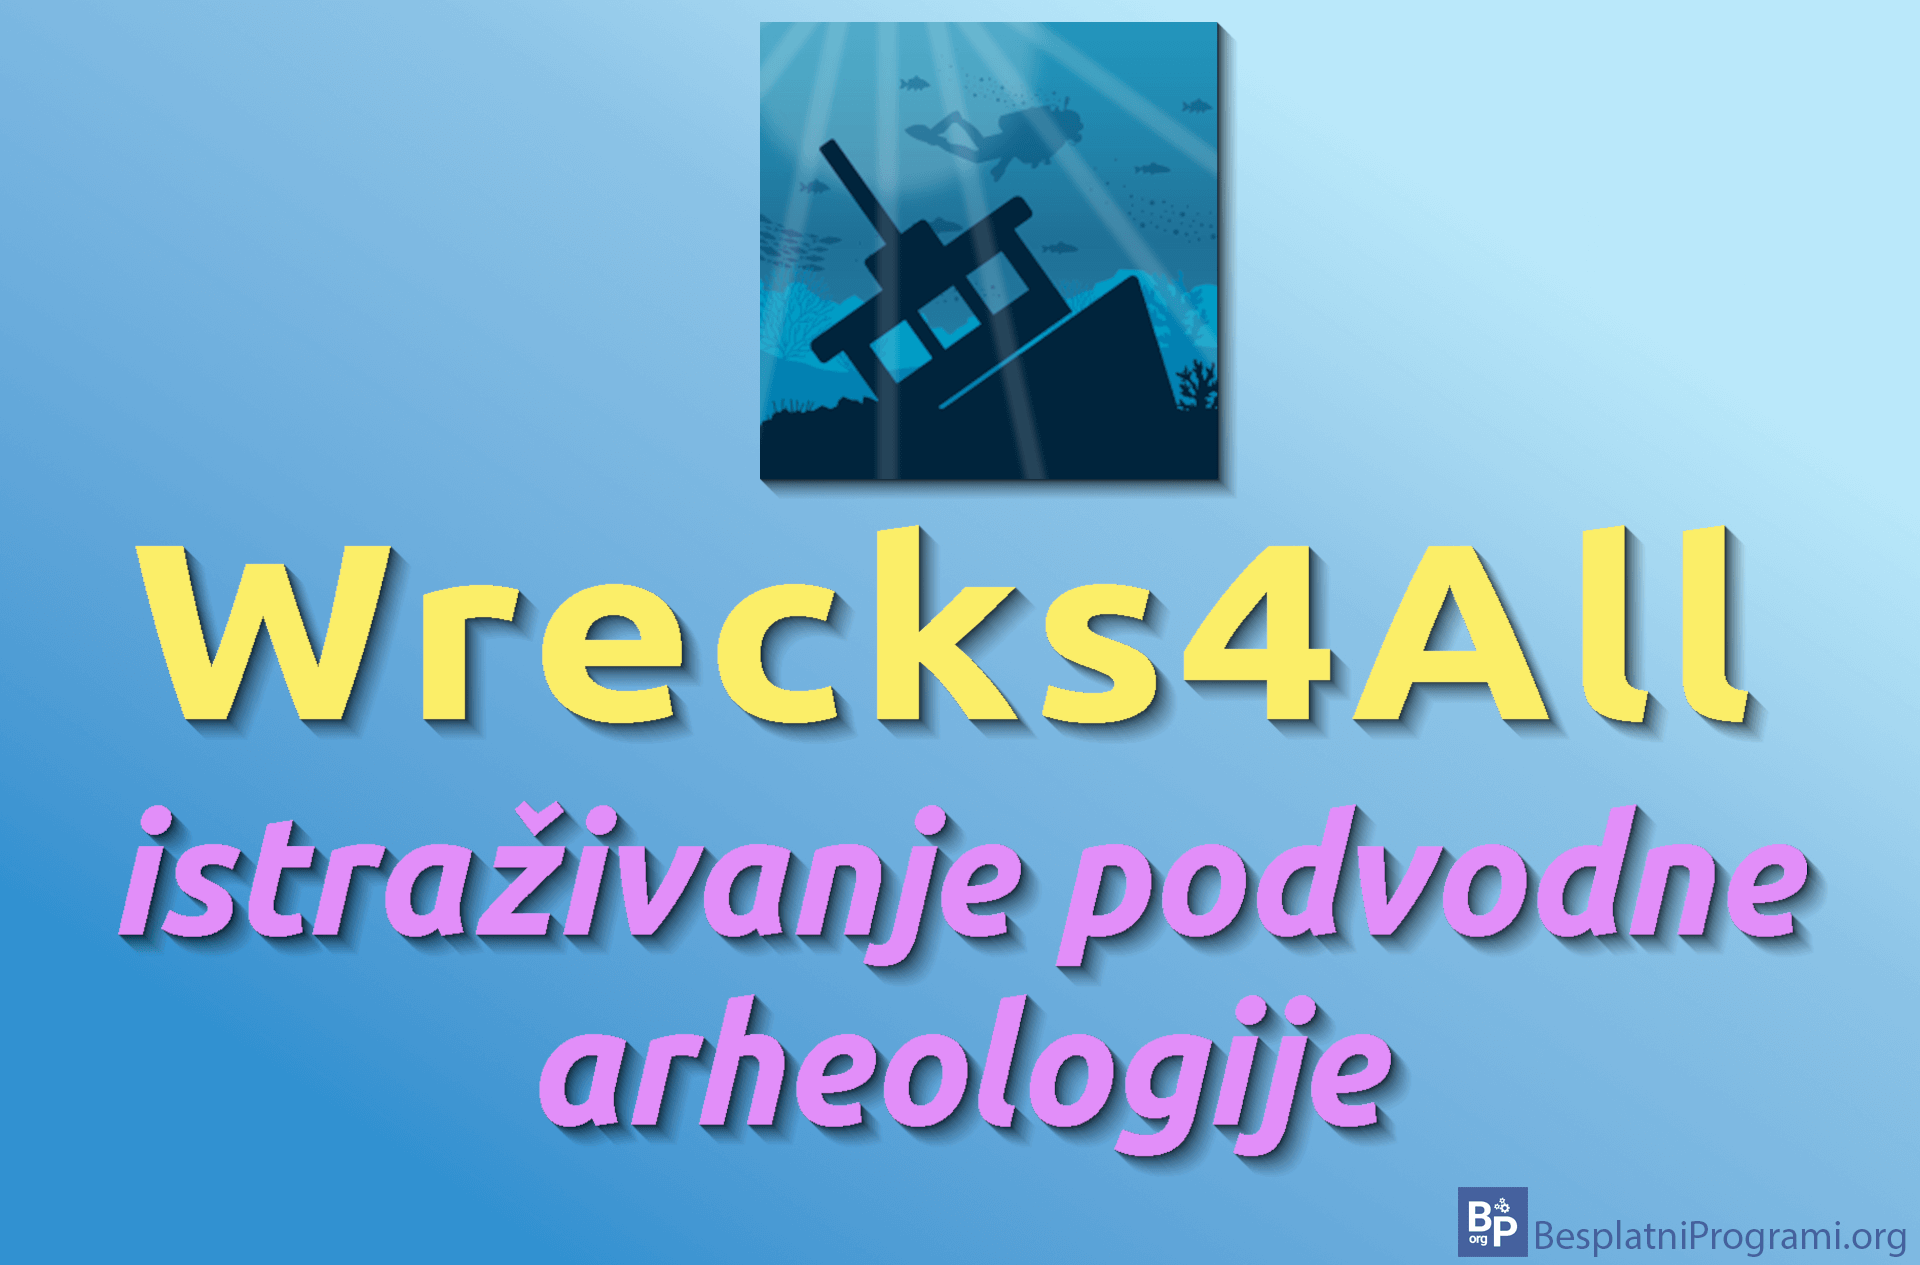 wrecks4all-istrazivanje-podvodne-arheologije